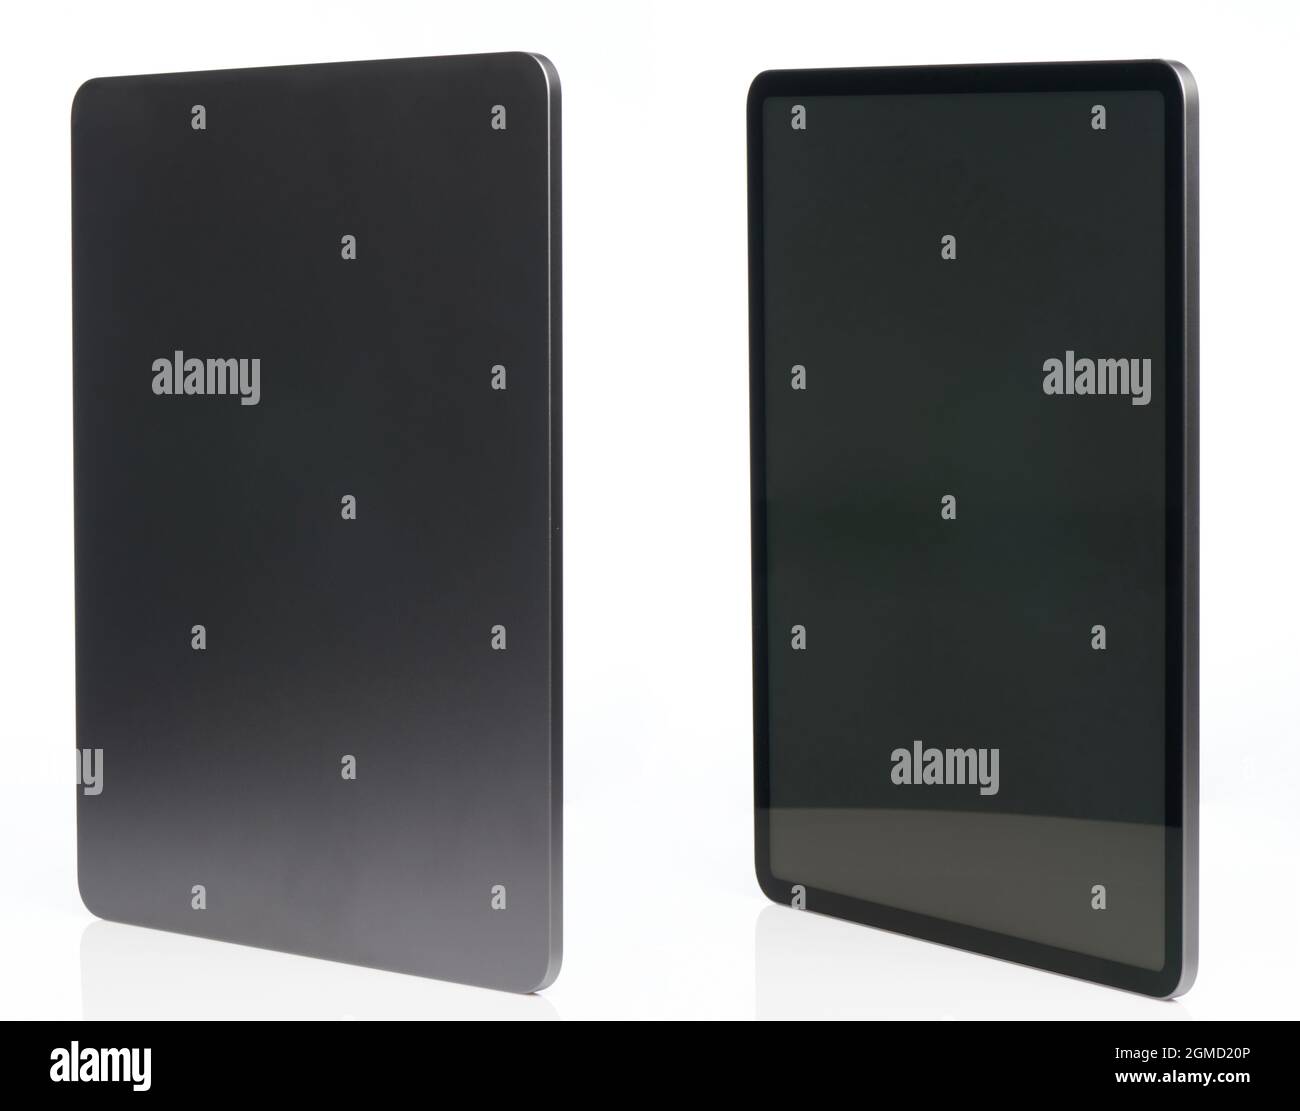 Tablette numérique en métal gris générique vue arrière et vue avant vue isométrique isolée Banque D'Images